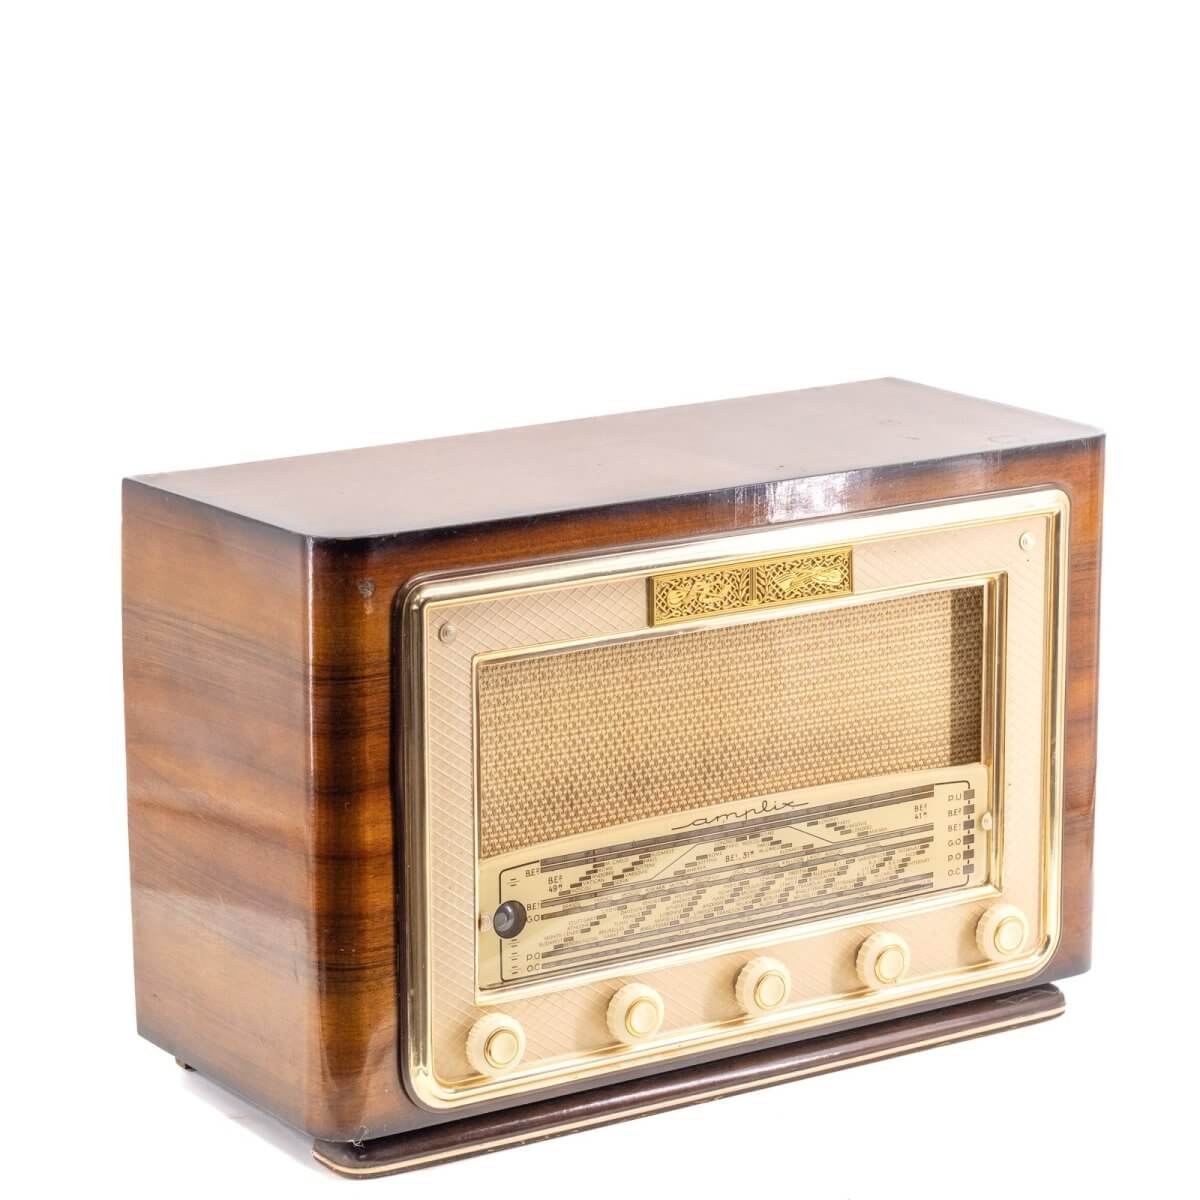 Radio Bluetooth Amplix Vintage 50’S enceinte connectée française haut de gamme prodige radio vintage